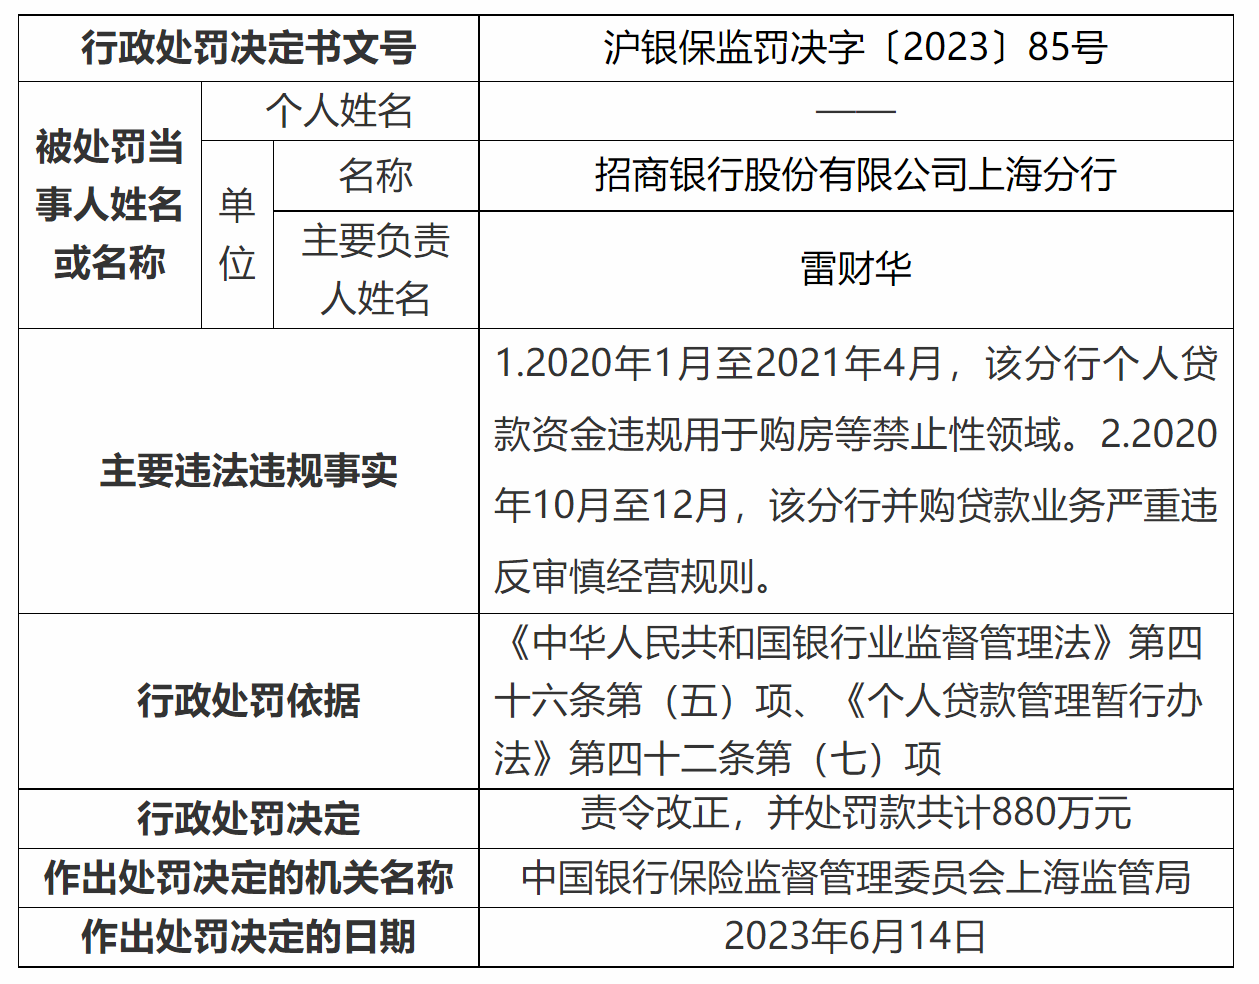 个人贷款资金违规用于购房  招行上海分行合计被罚1040万元